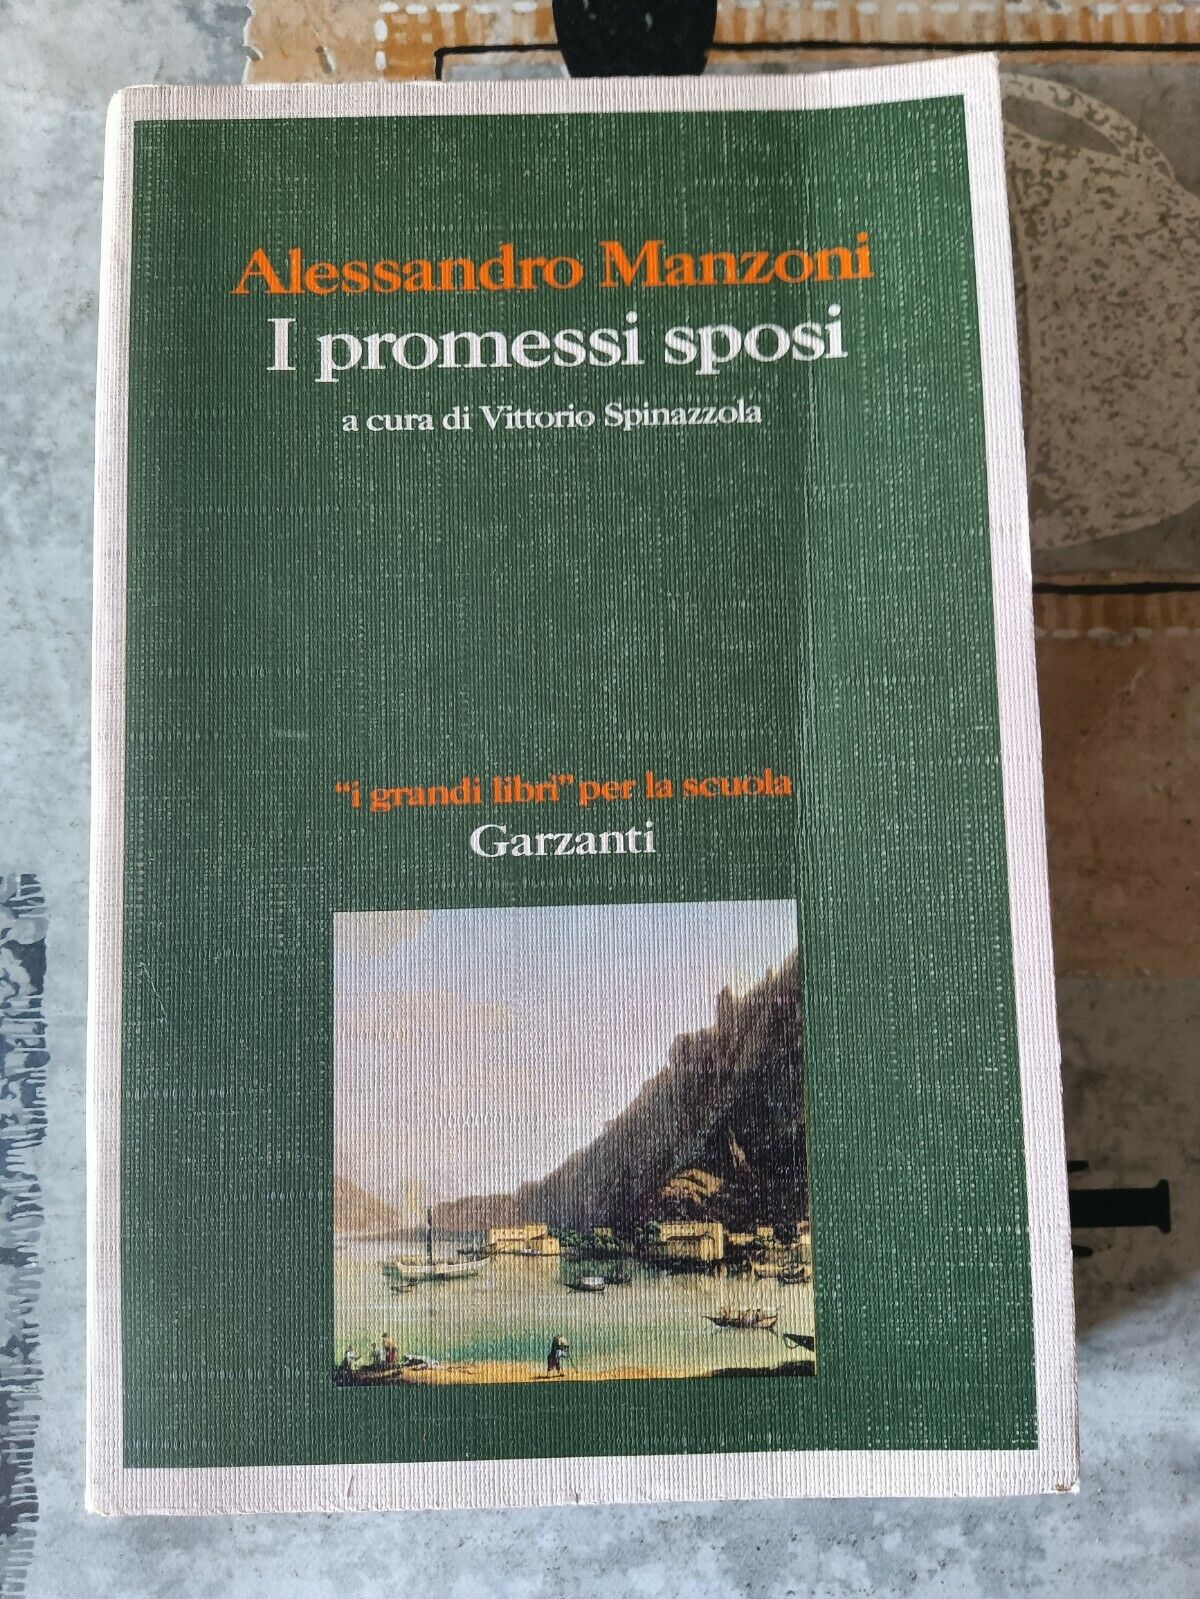 I promessi sposi | Alessandro Manzoni - Garzanti